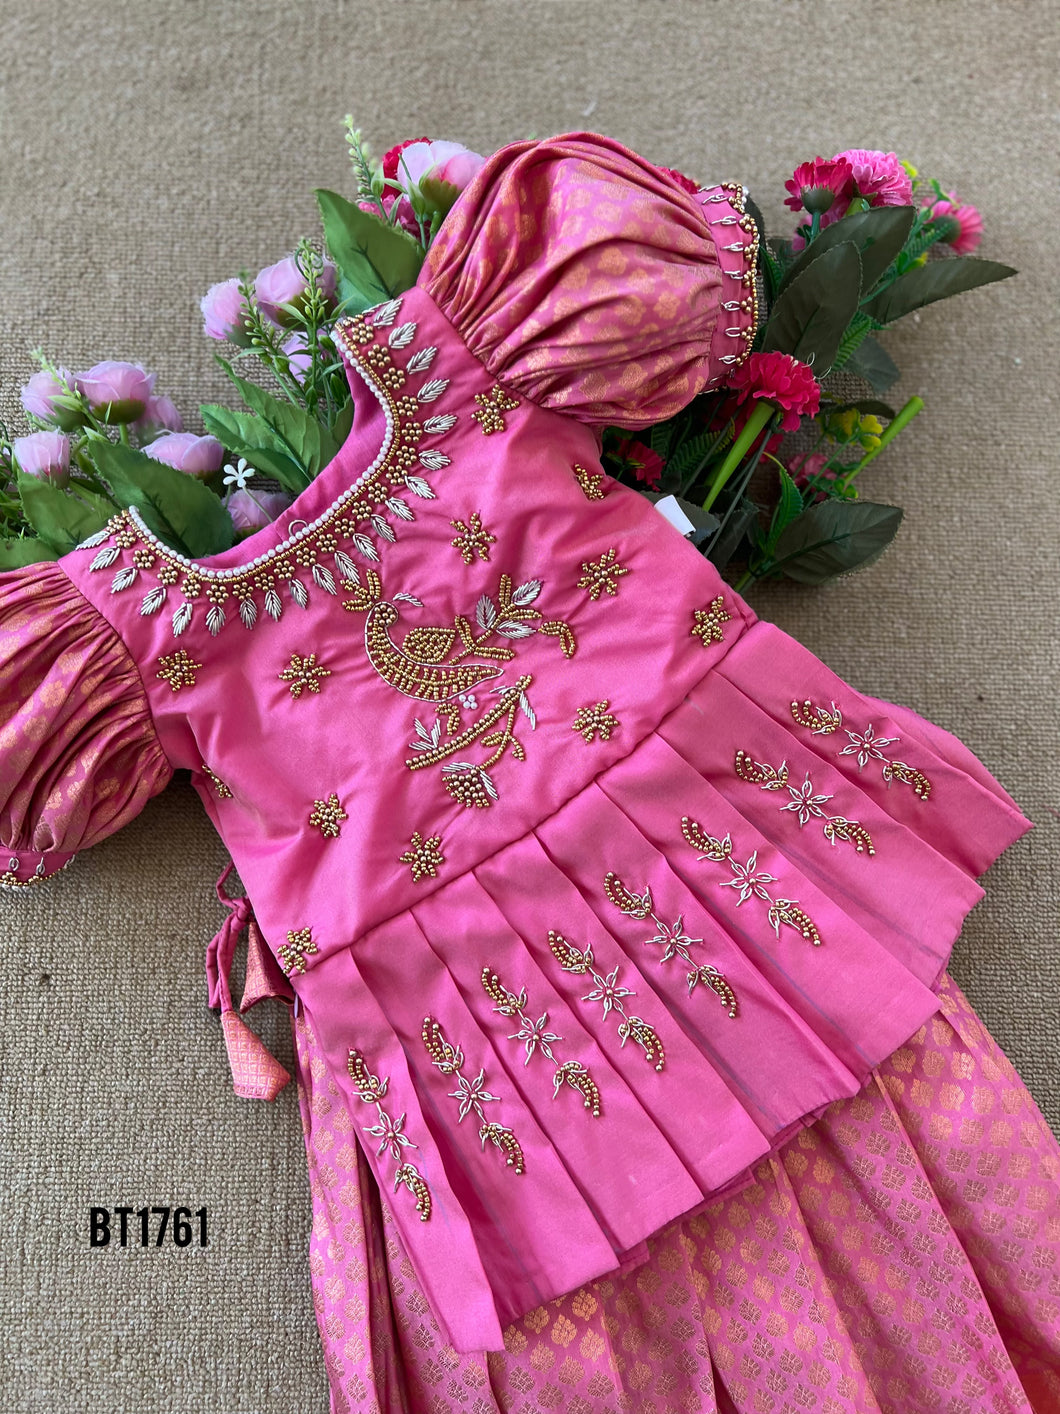 BT1761 Regal Rose Embroidered Elegance Dress for Little Ladies